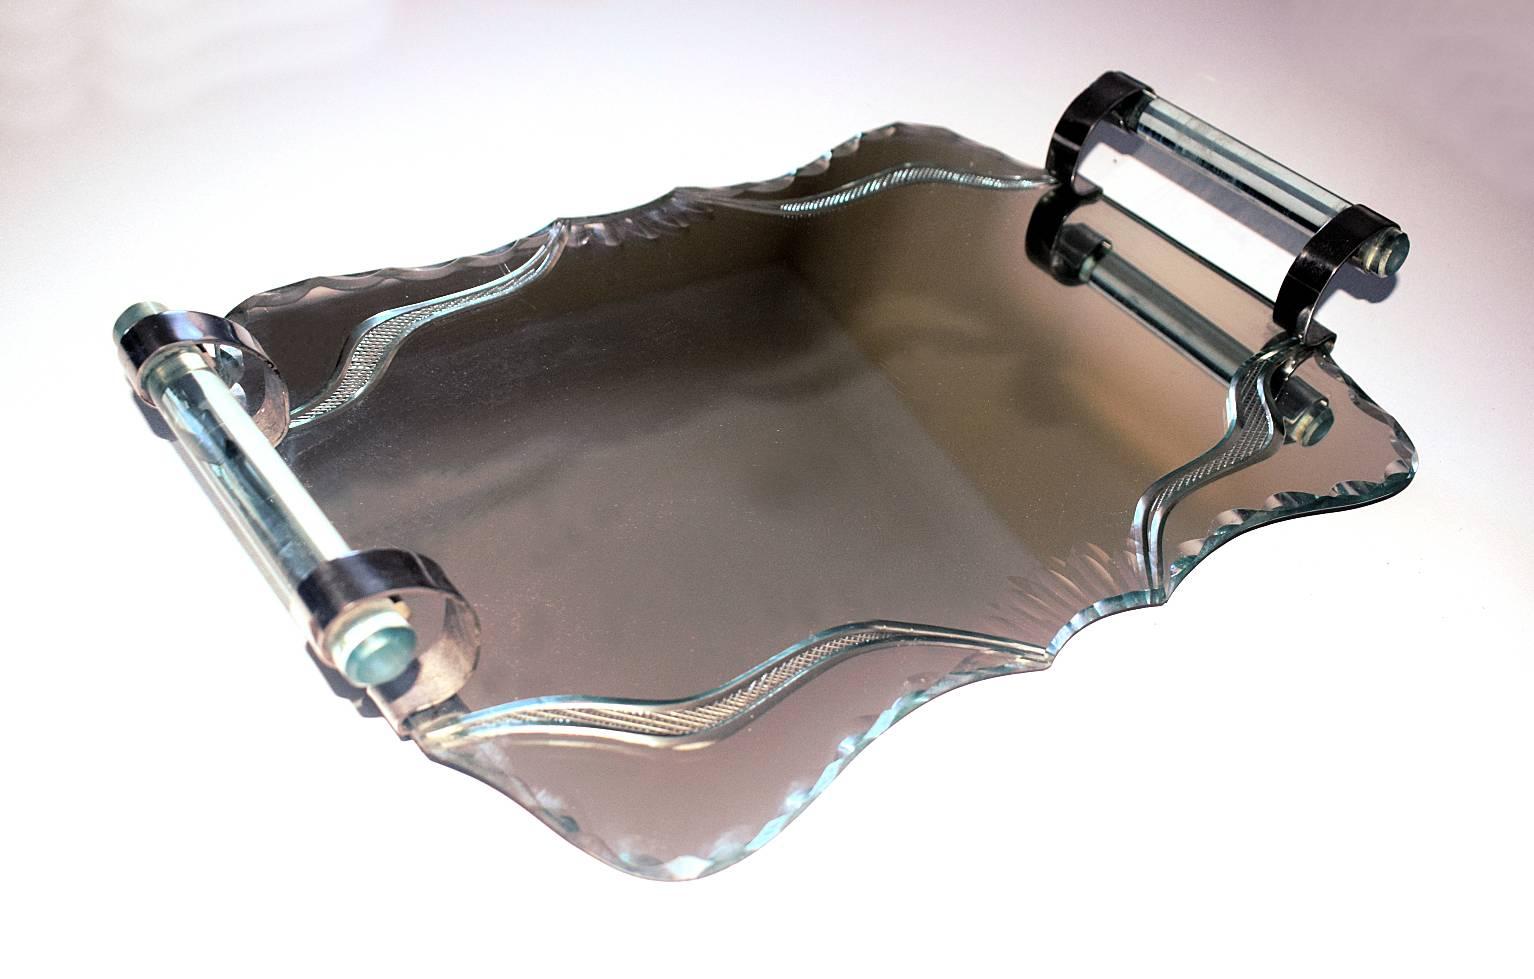 Originales, französisches Art-Déco-Spiegeltablett aus den 1930er Jahren, schönes Design, hergestellt aus Spiegel und verchromtem Aluminium.
Mit Cocktailgläsern und Cocktailshakern würde es fabelhaft aussehen. Der Spiegel ist mit einer Gravur